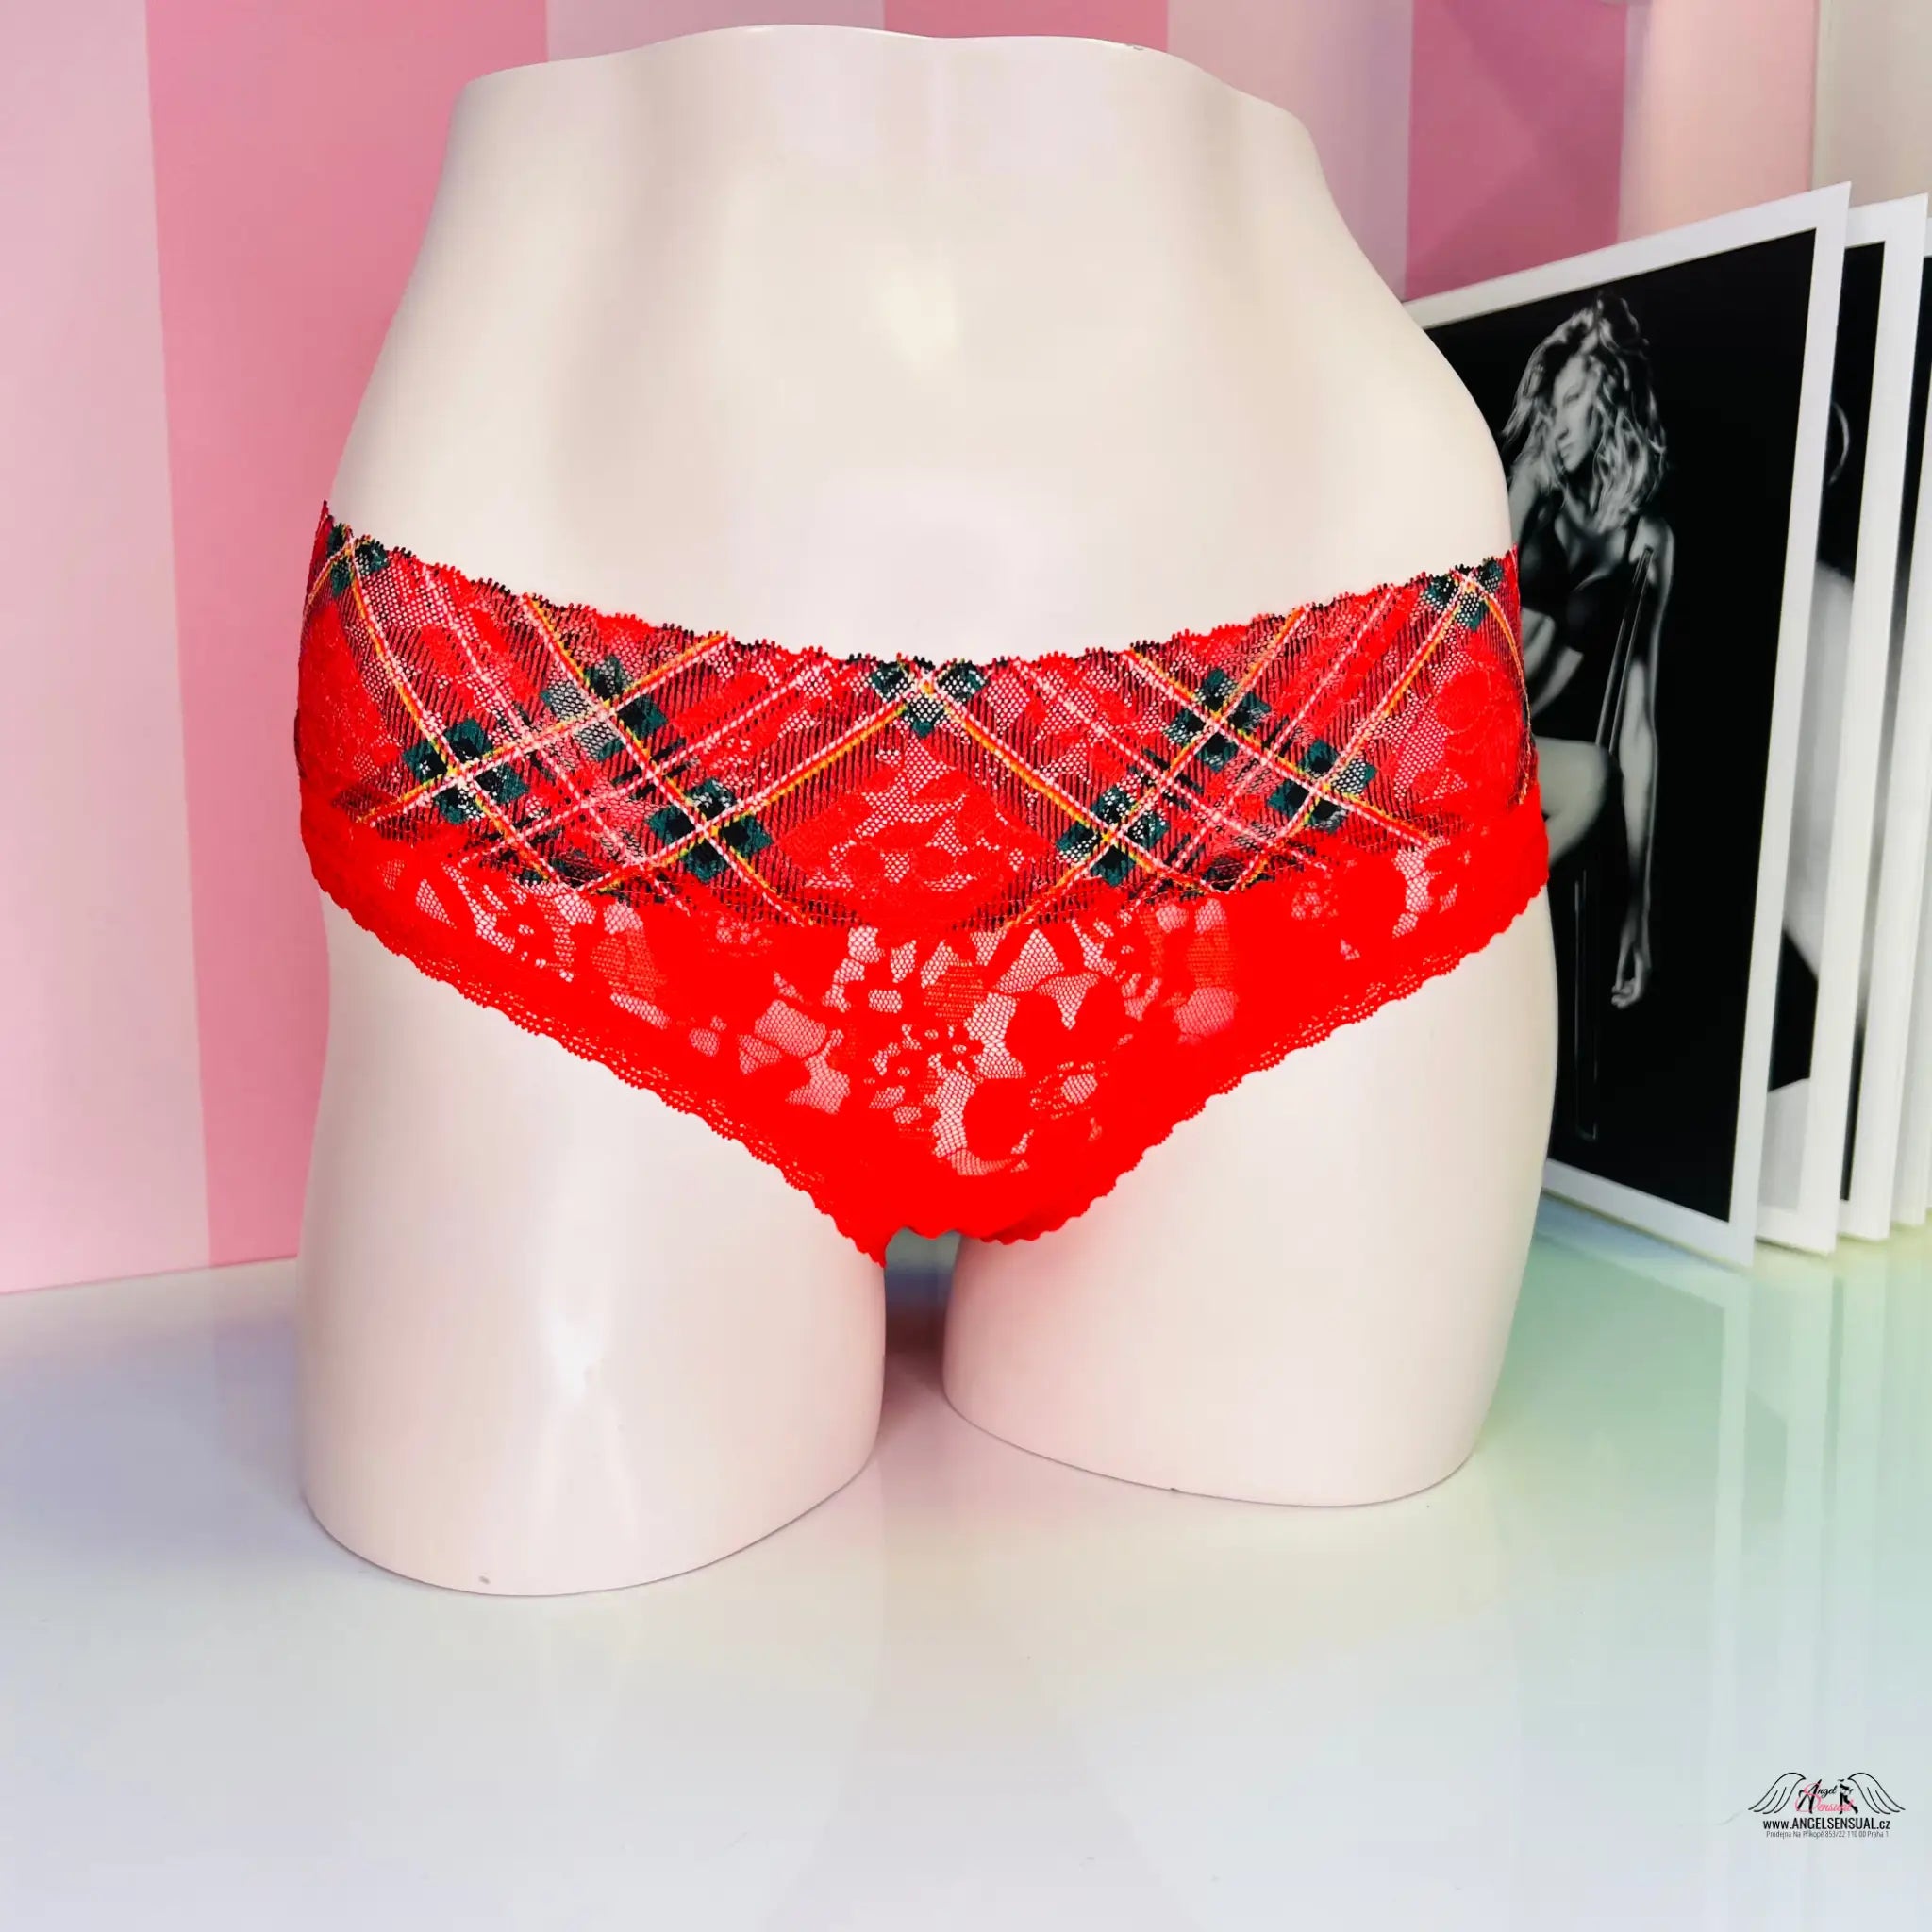 Krajkové kalhotky - L / Červená / Nové se štítky - Kalhotky Victoria’s Secret